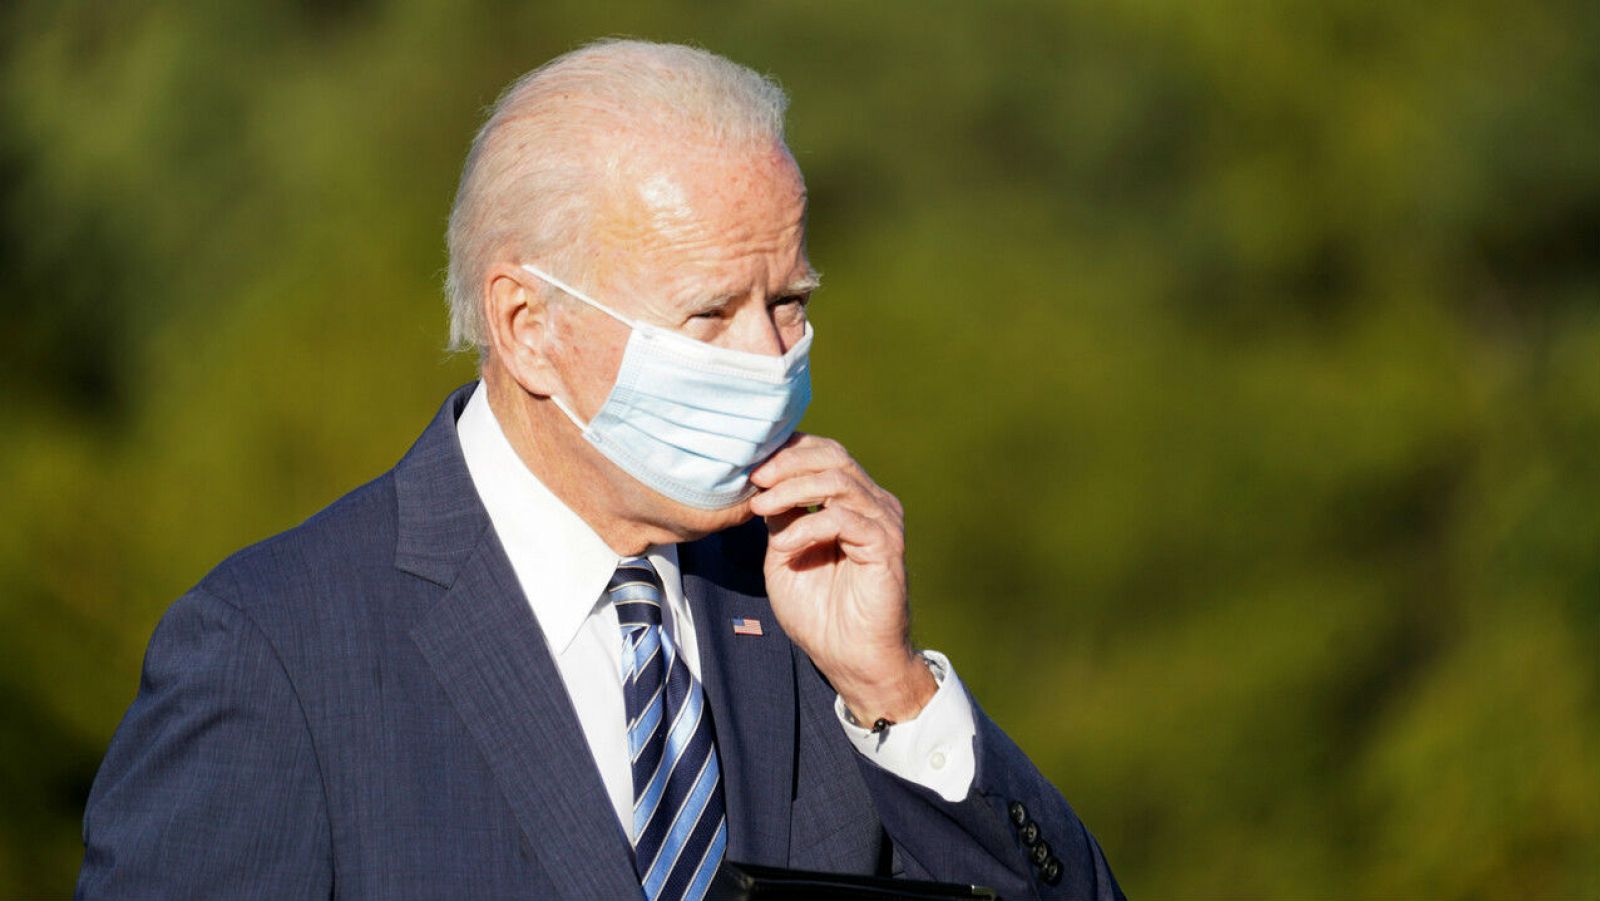 El candidato presidencial demócrata de Estados Unidos, Joe Biden, se ajusta la mascarilla durante una parada de campaña en Gettysburg, Pensilvania, Estados Unidos.